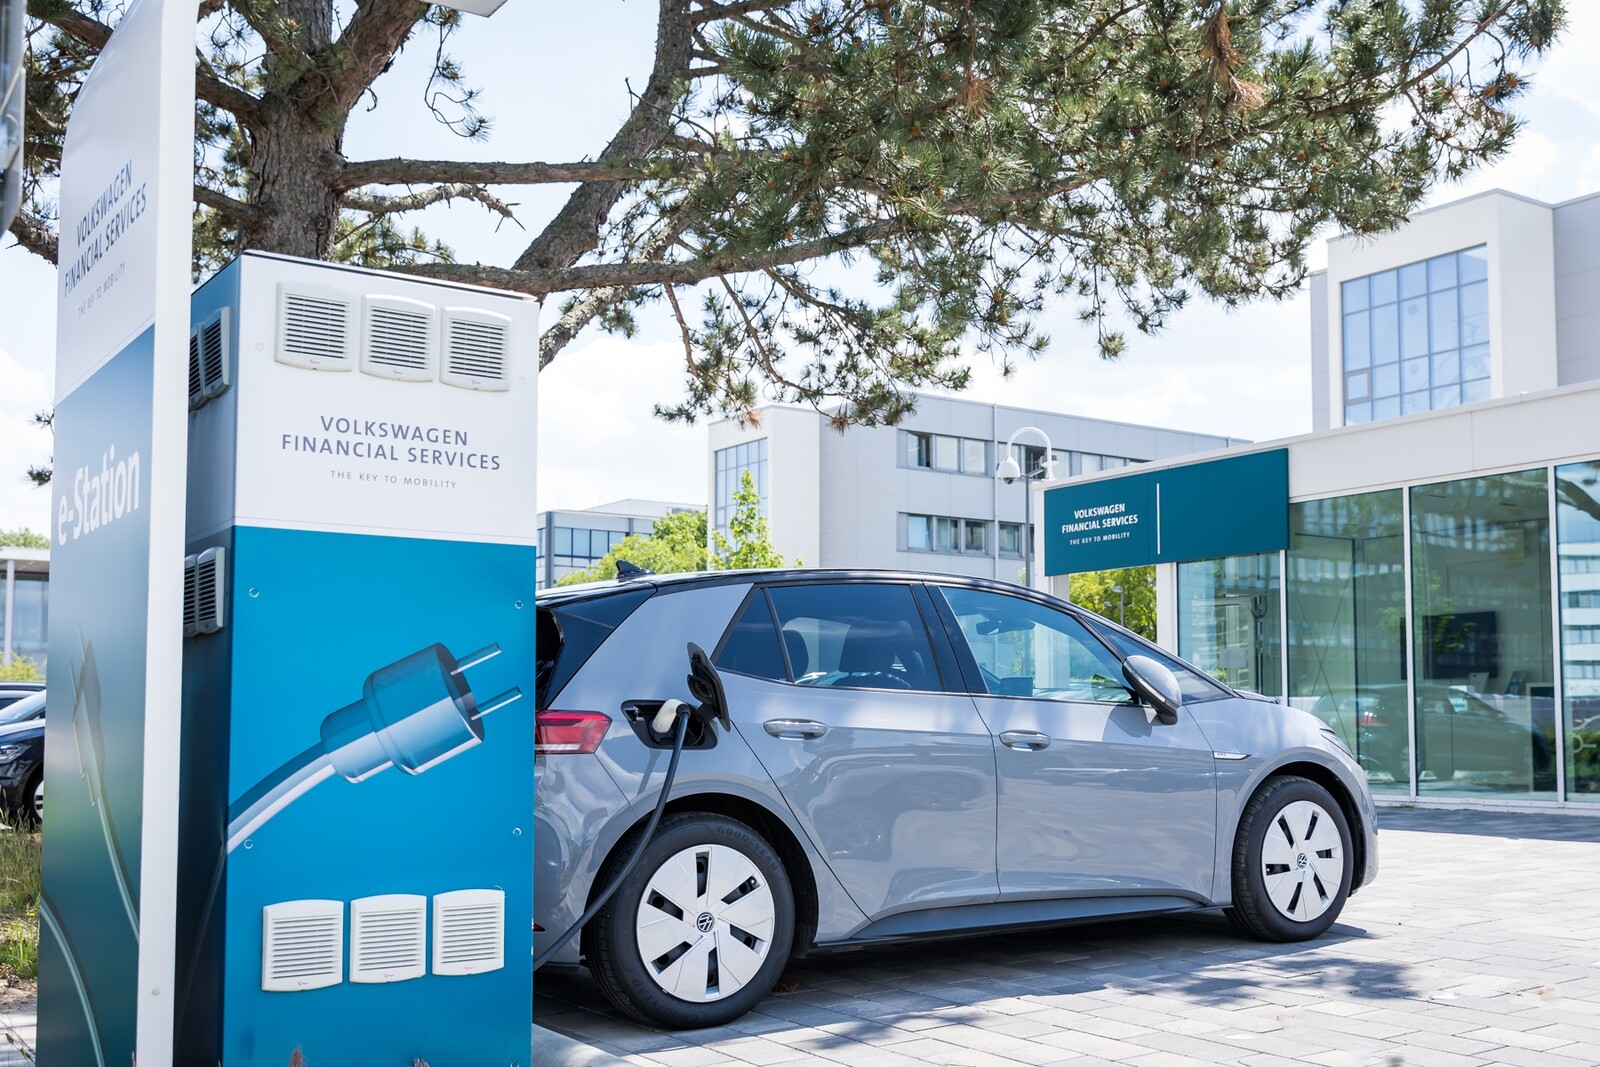 Volkswagen Financial Services startet ein Elektromobilitätsprogramm mit unter anderem Beratungsdienstleistungen.